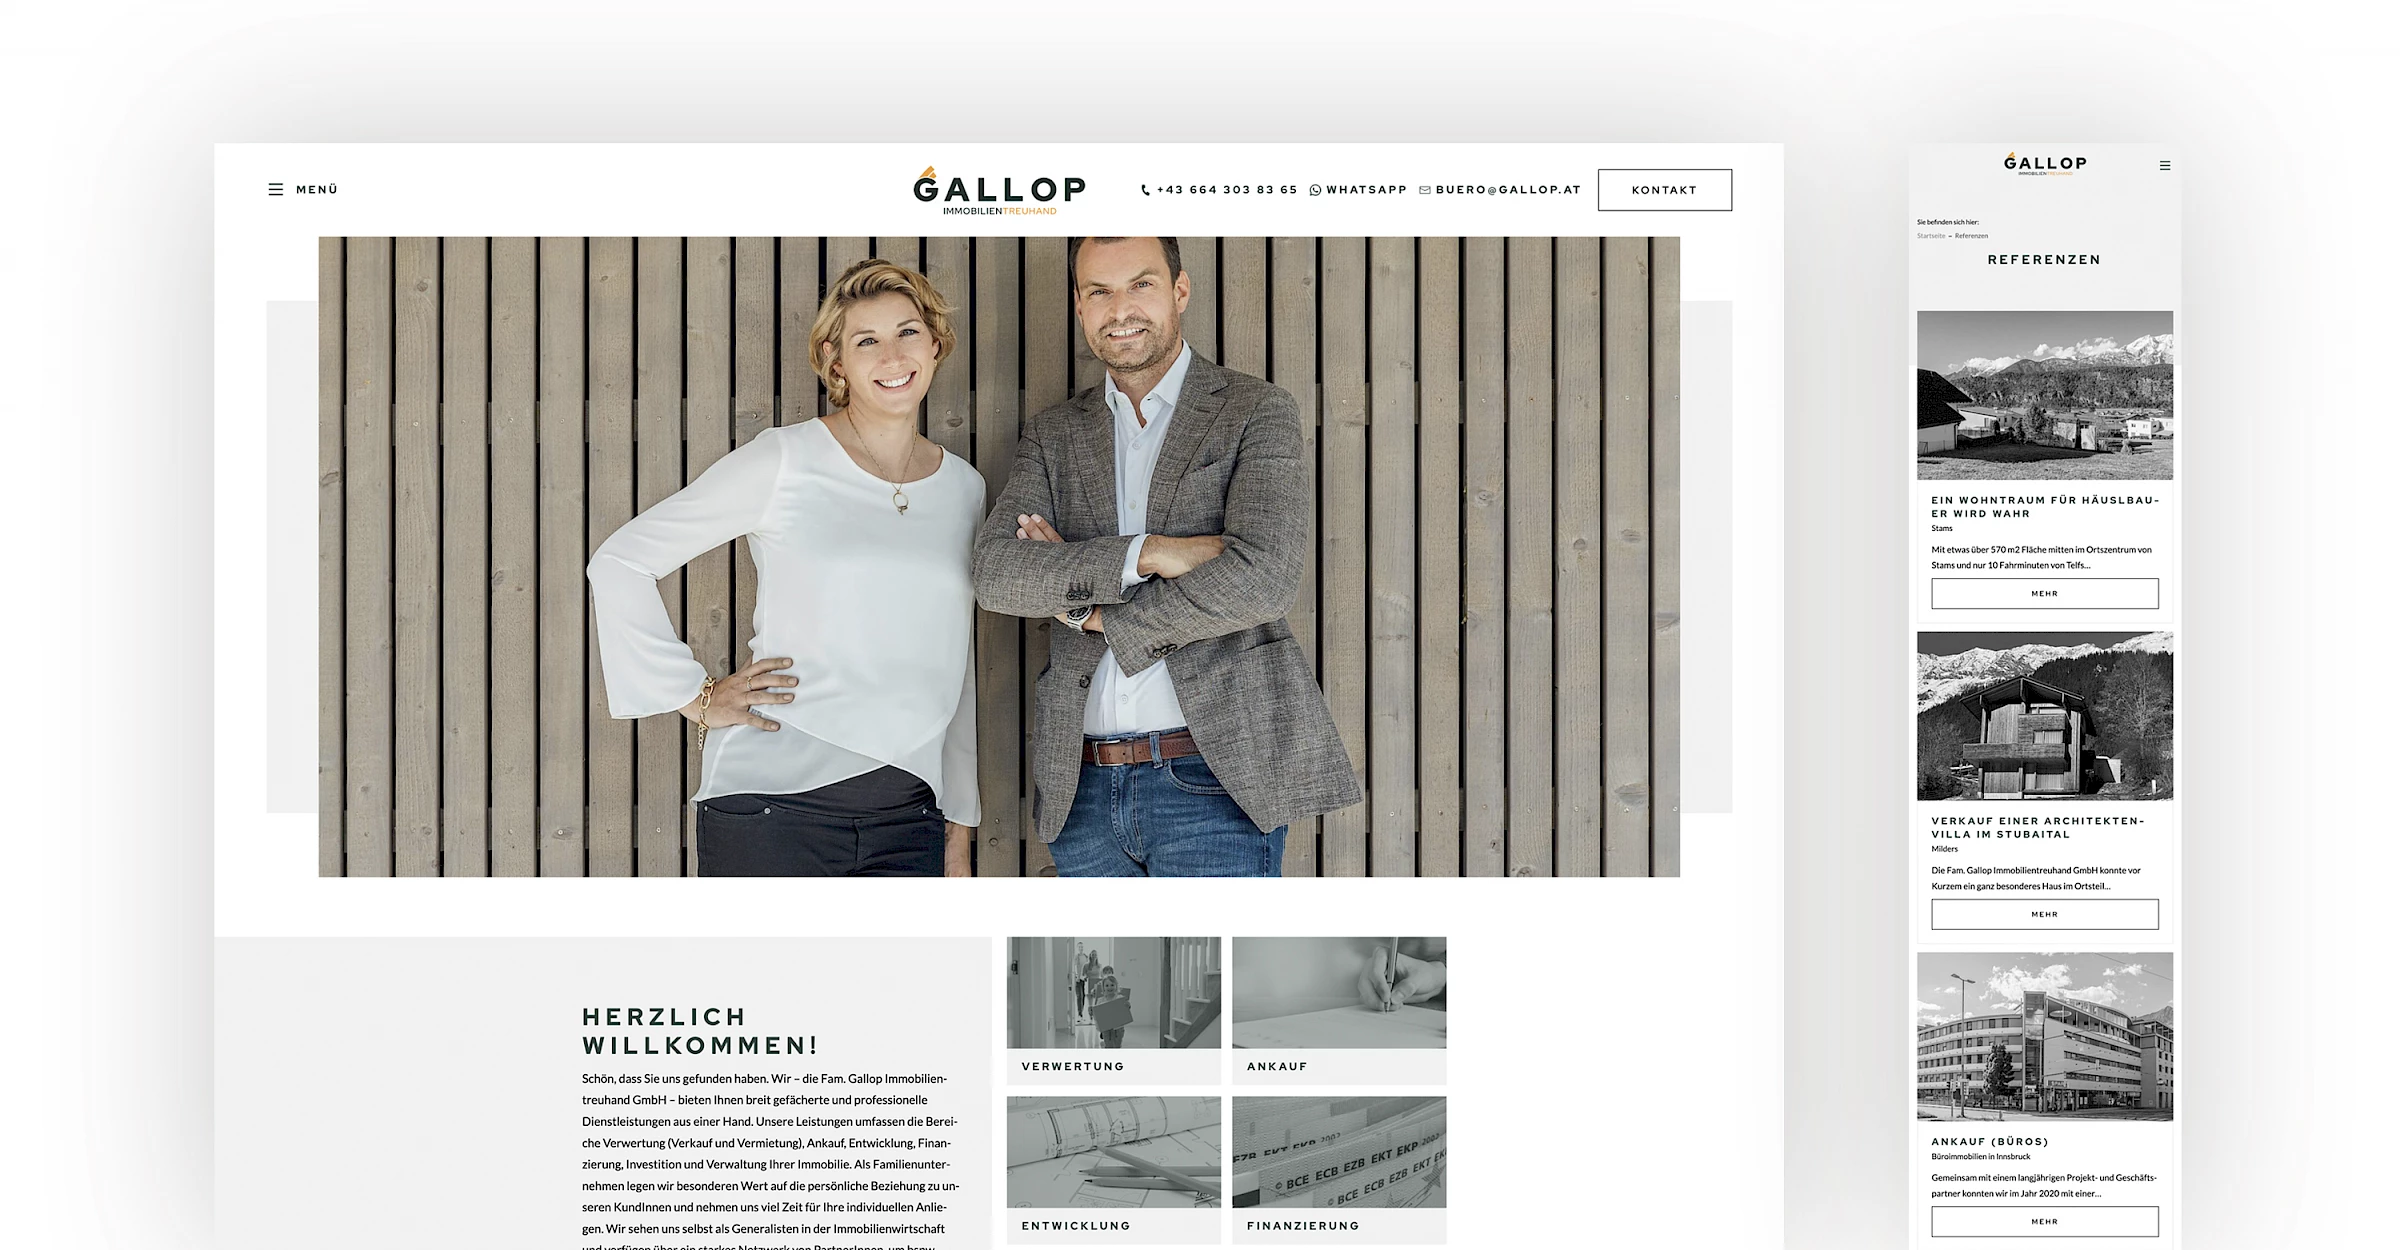 Webdesign der Website gallop.at, designed und programmiert von Buerostark Werbeagentur in Telfs